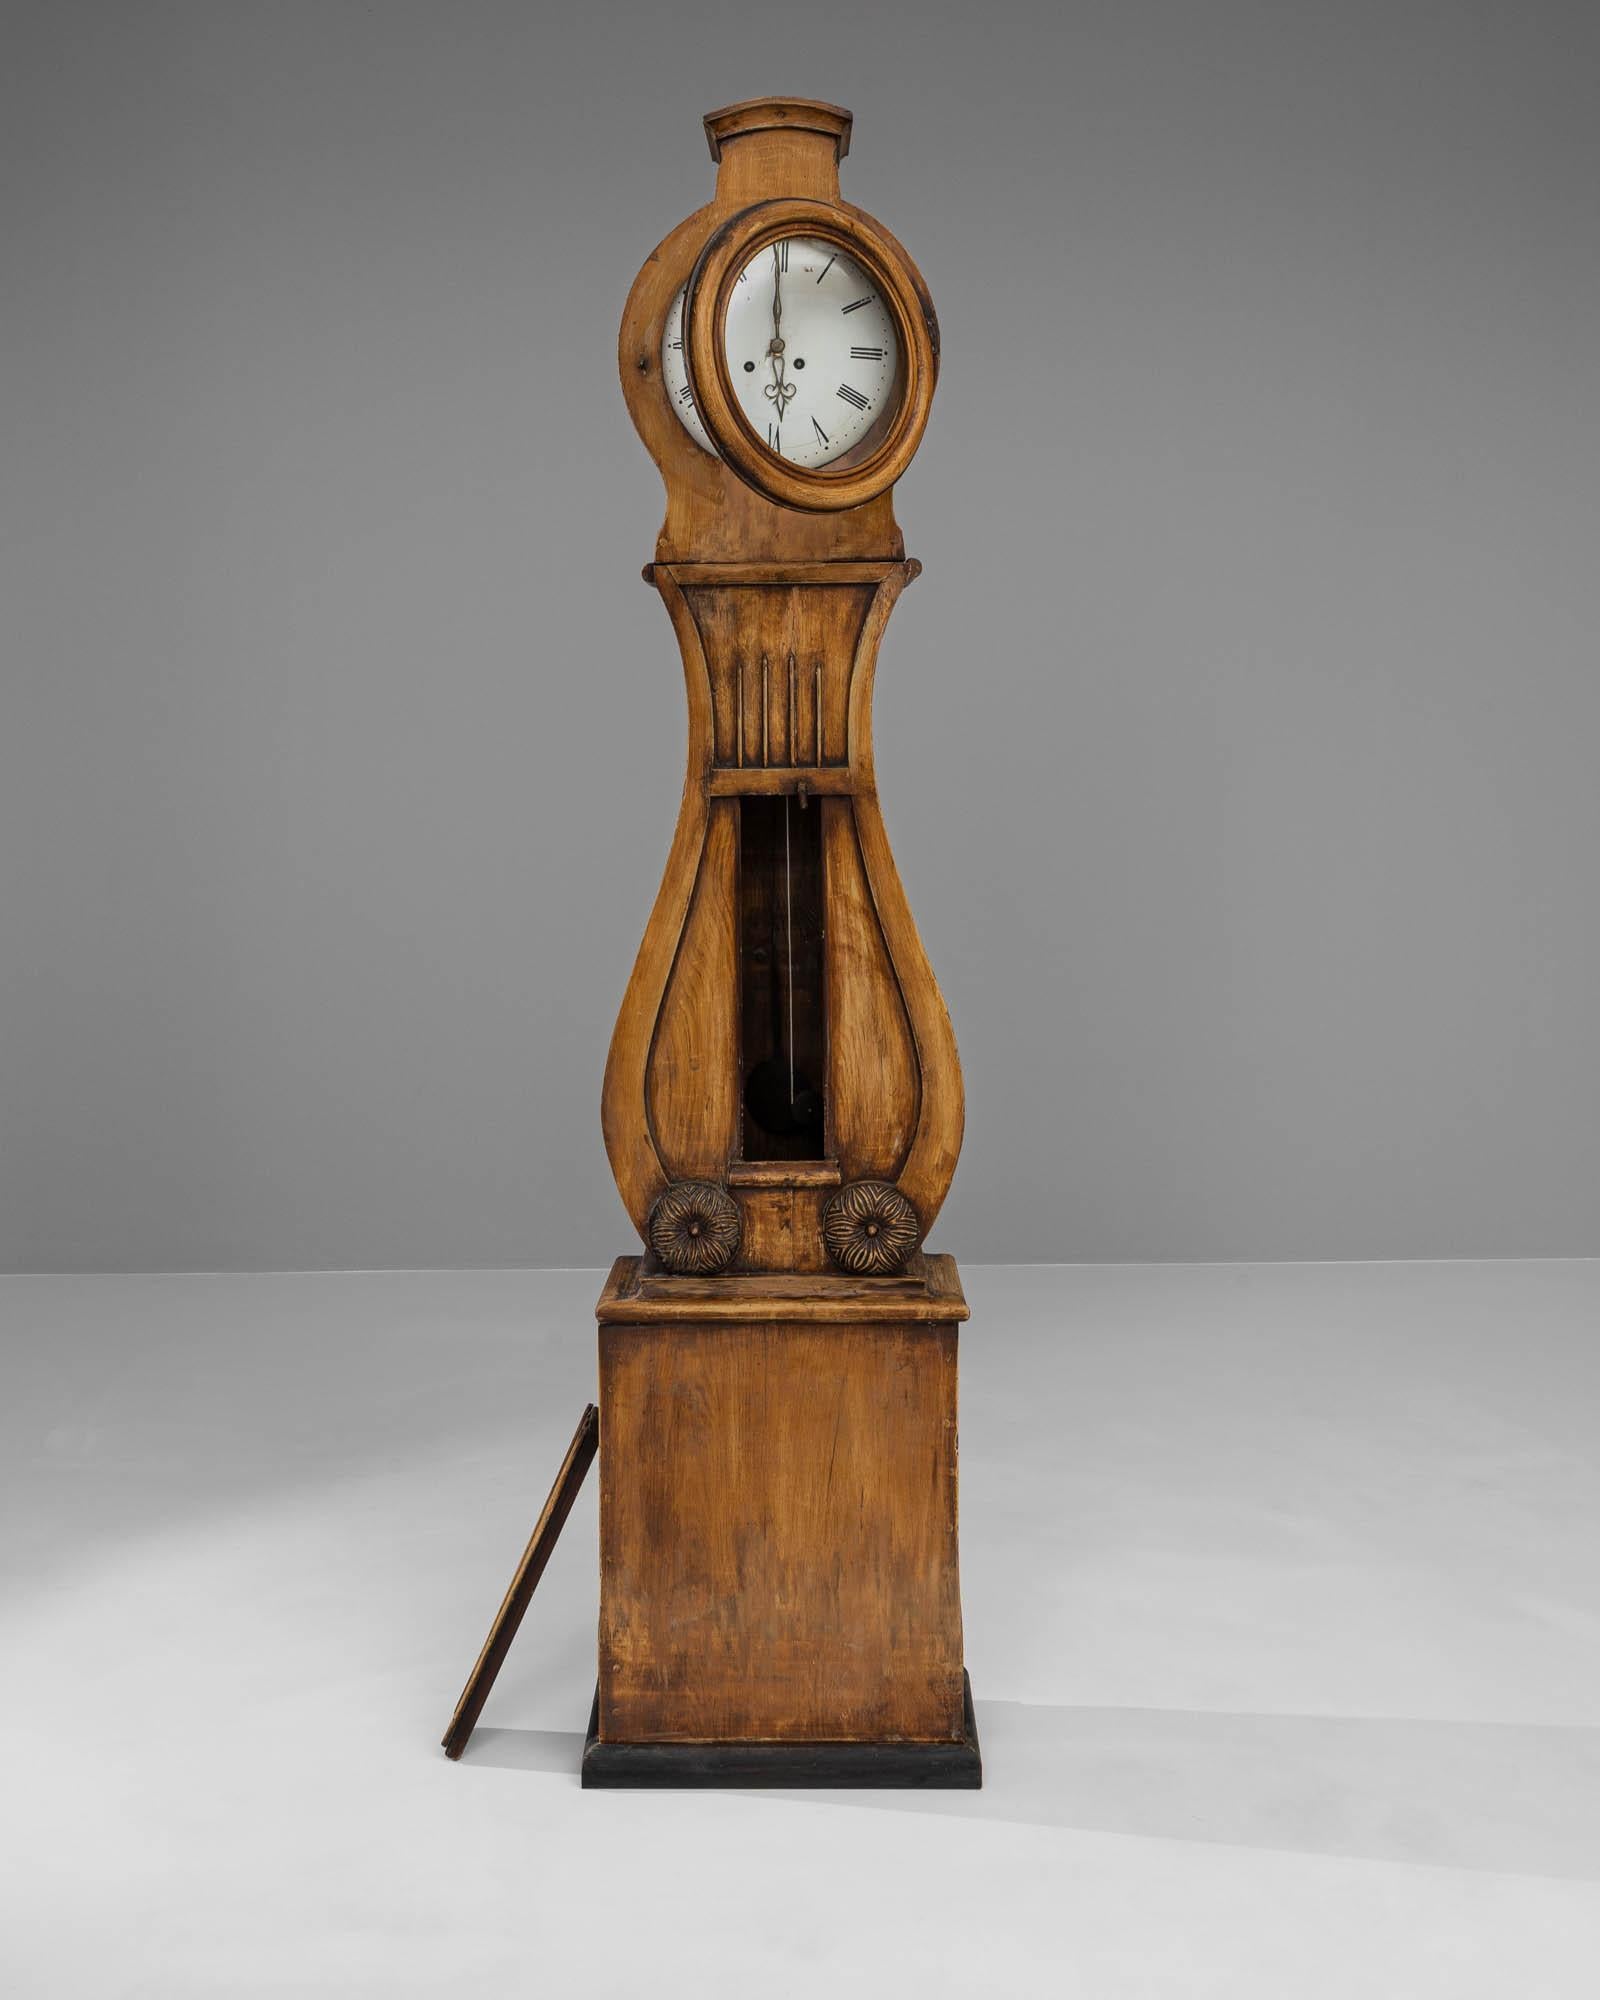 Admirez le charme de cette horloge en bois suédoise du début du XIXe siècle, un chef-d'œuvre de l'antiquité qui capture l'essence de son époque. Sa construction en chêne robuste se tient debout, avec une patine naturelle riche qui raconte l'histoire